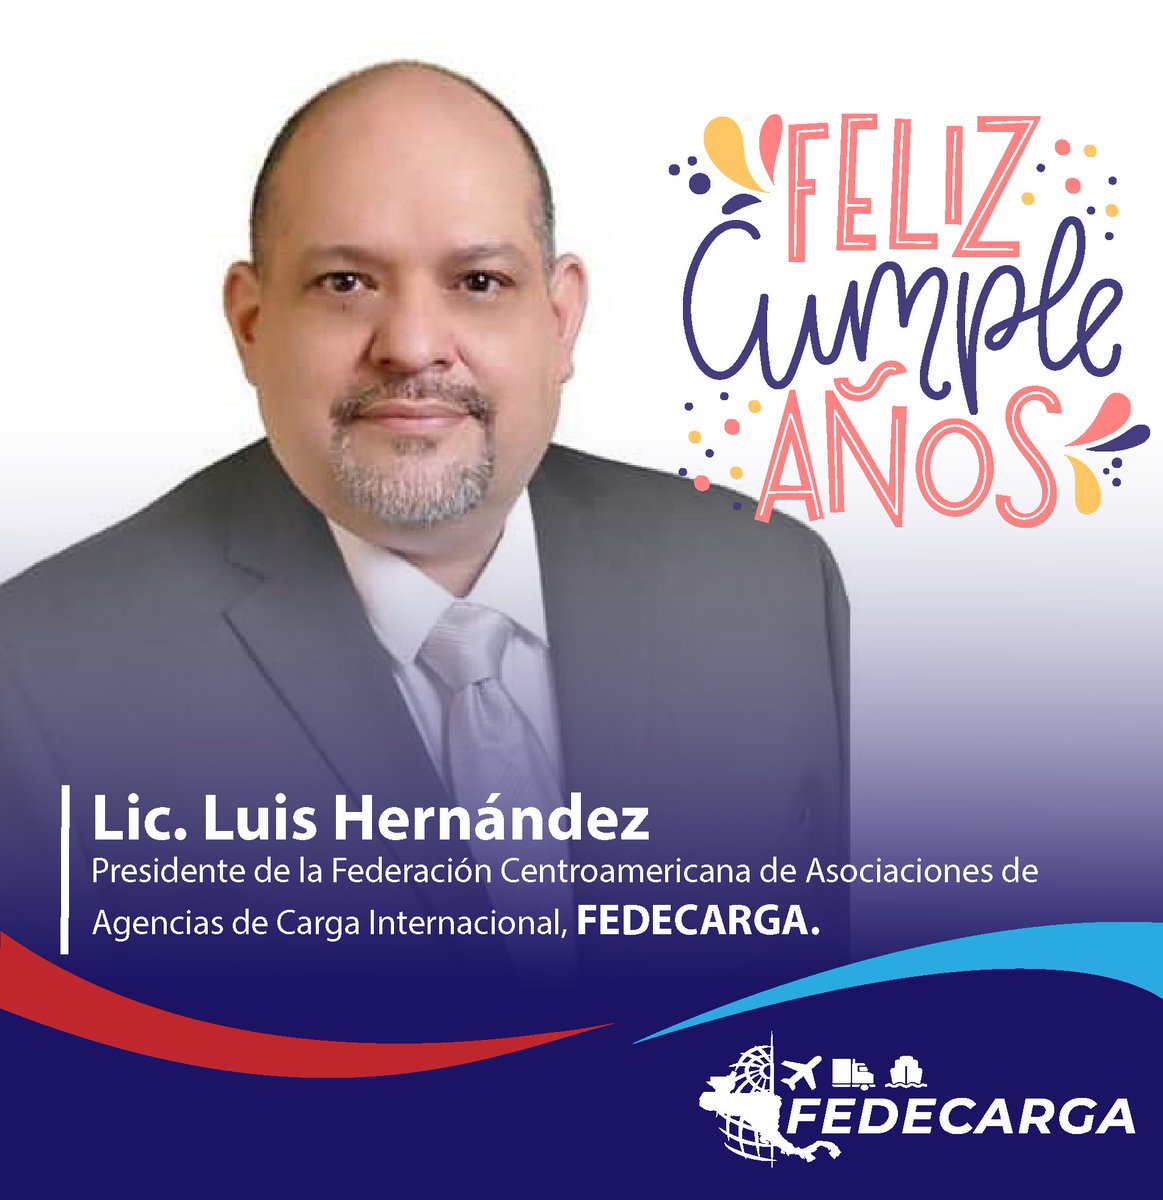 Feliz cumpleaños a nuestro estimado presidente de @fedecarga Lic. Luis Hernández, deseamos años mas de vida y buena salud 🇭🇳🇭🇳🎉🎉🍾🥳@Monfortiz